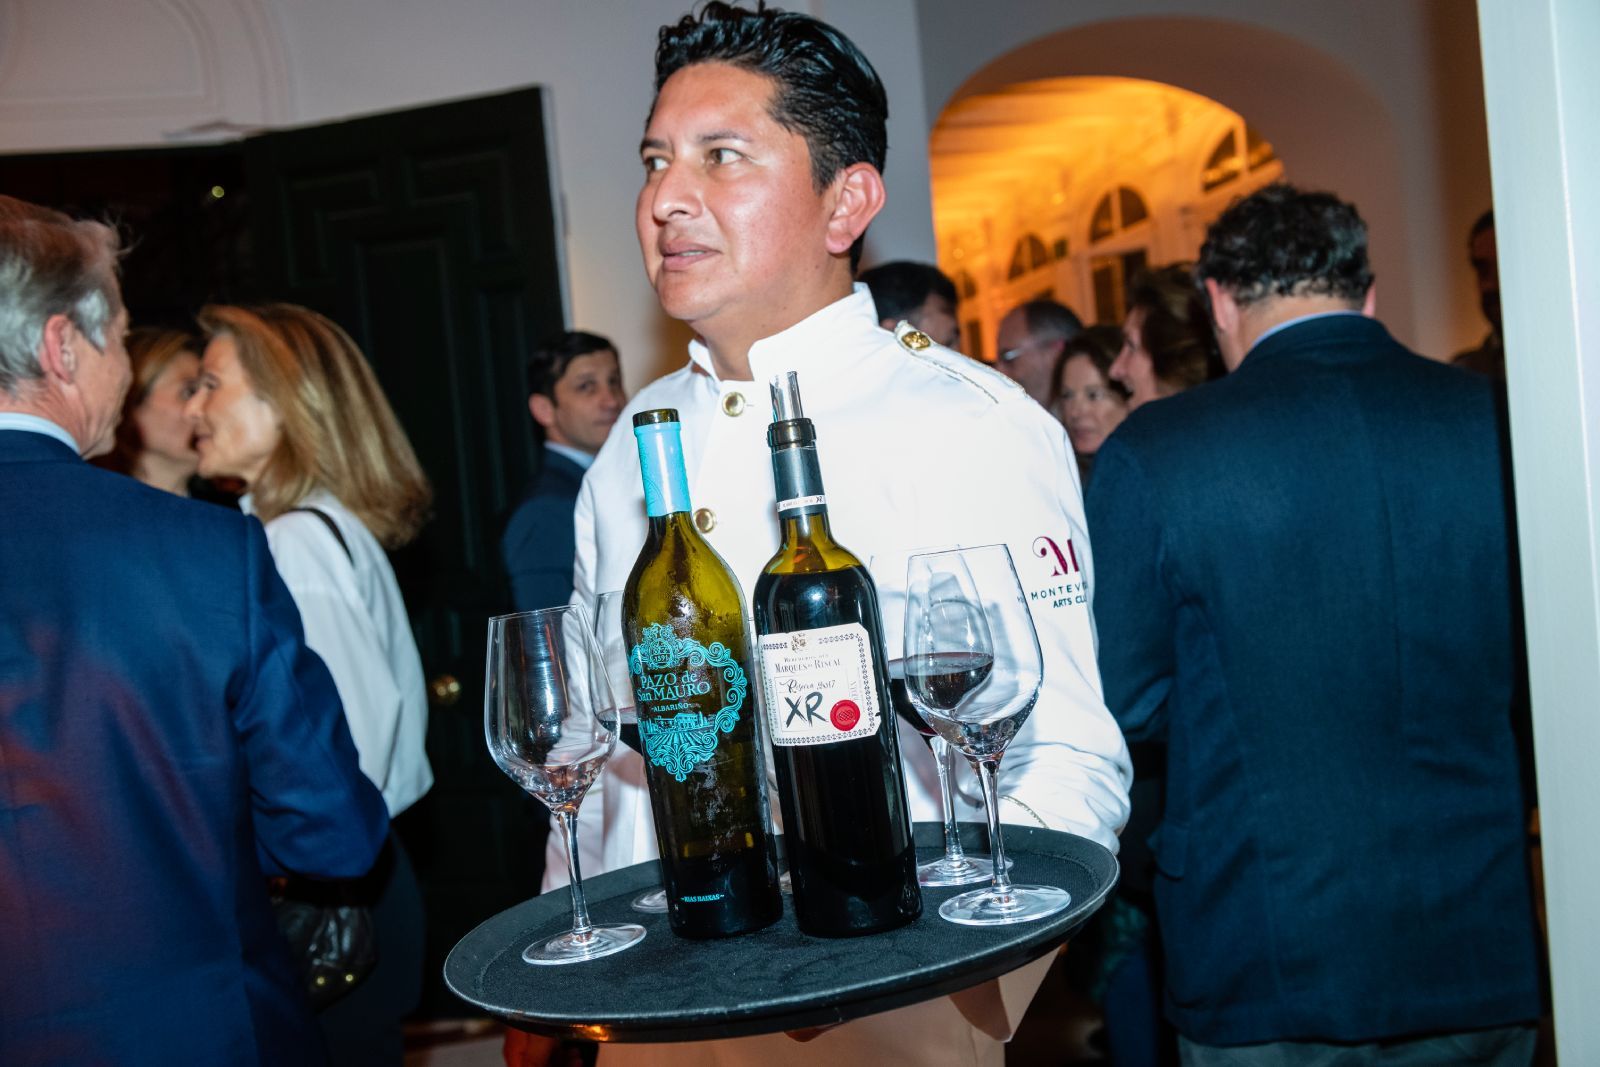 Albariño Pazo de San Mauro y Marqués de Riscal XR, reserva de 2017, fueron los otros vinos con los que se obsequió a los invitados. - imagen 33